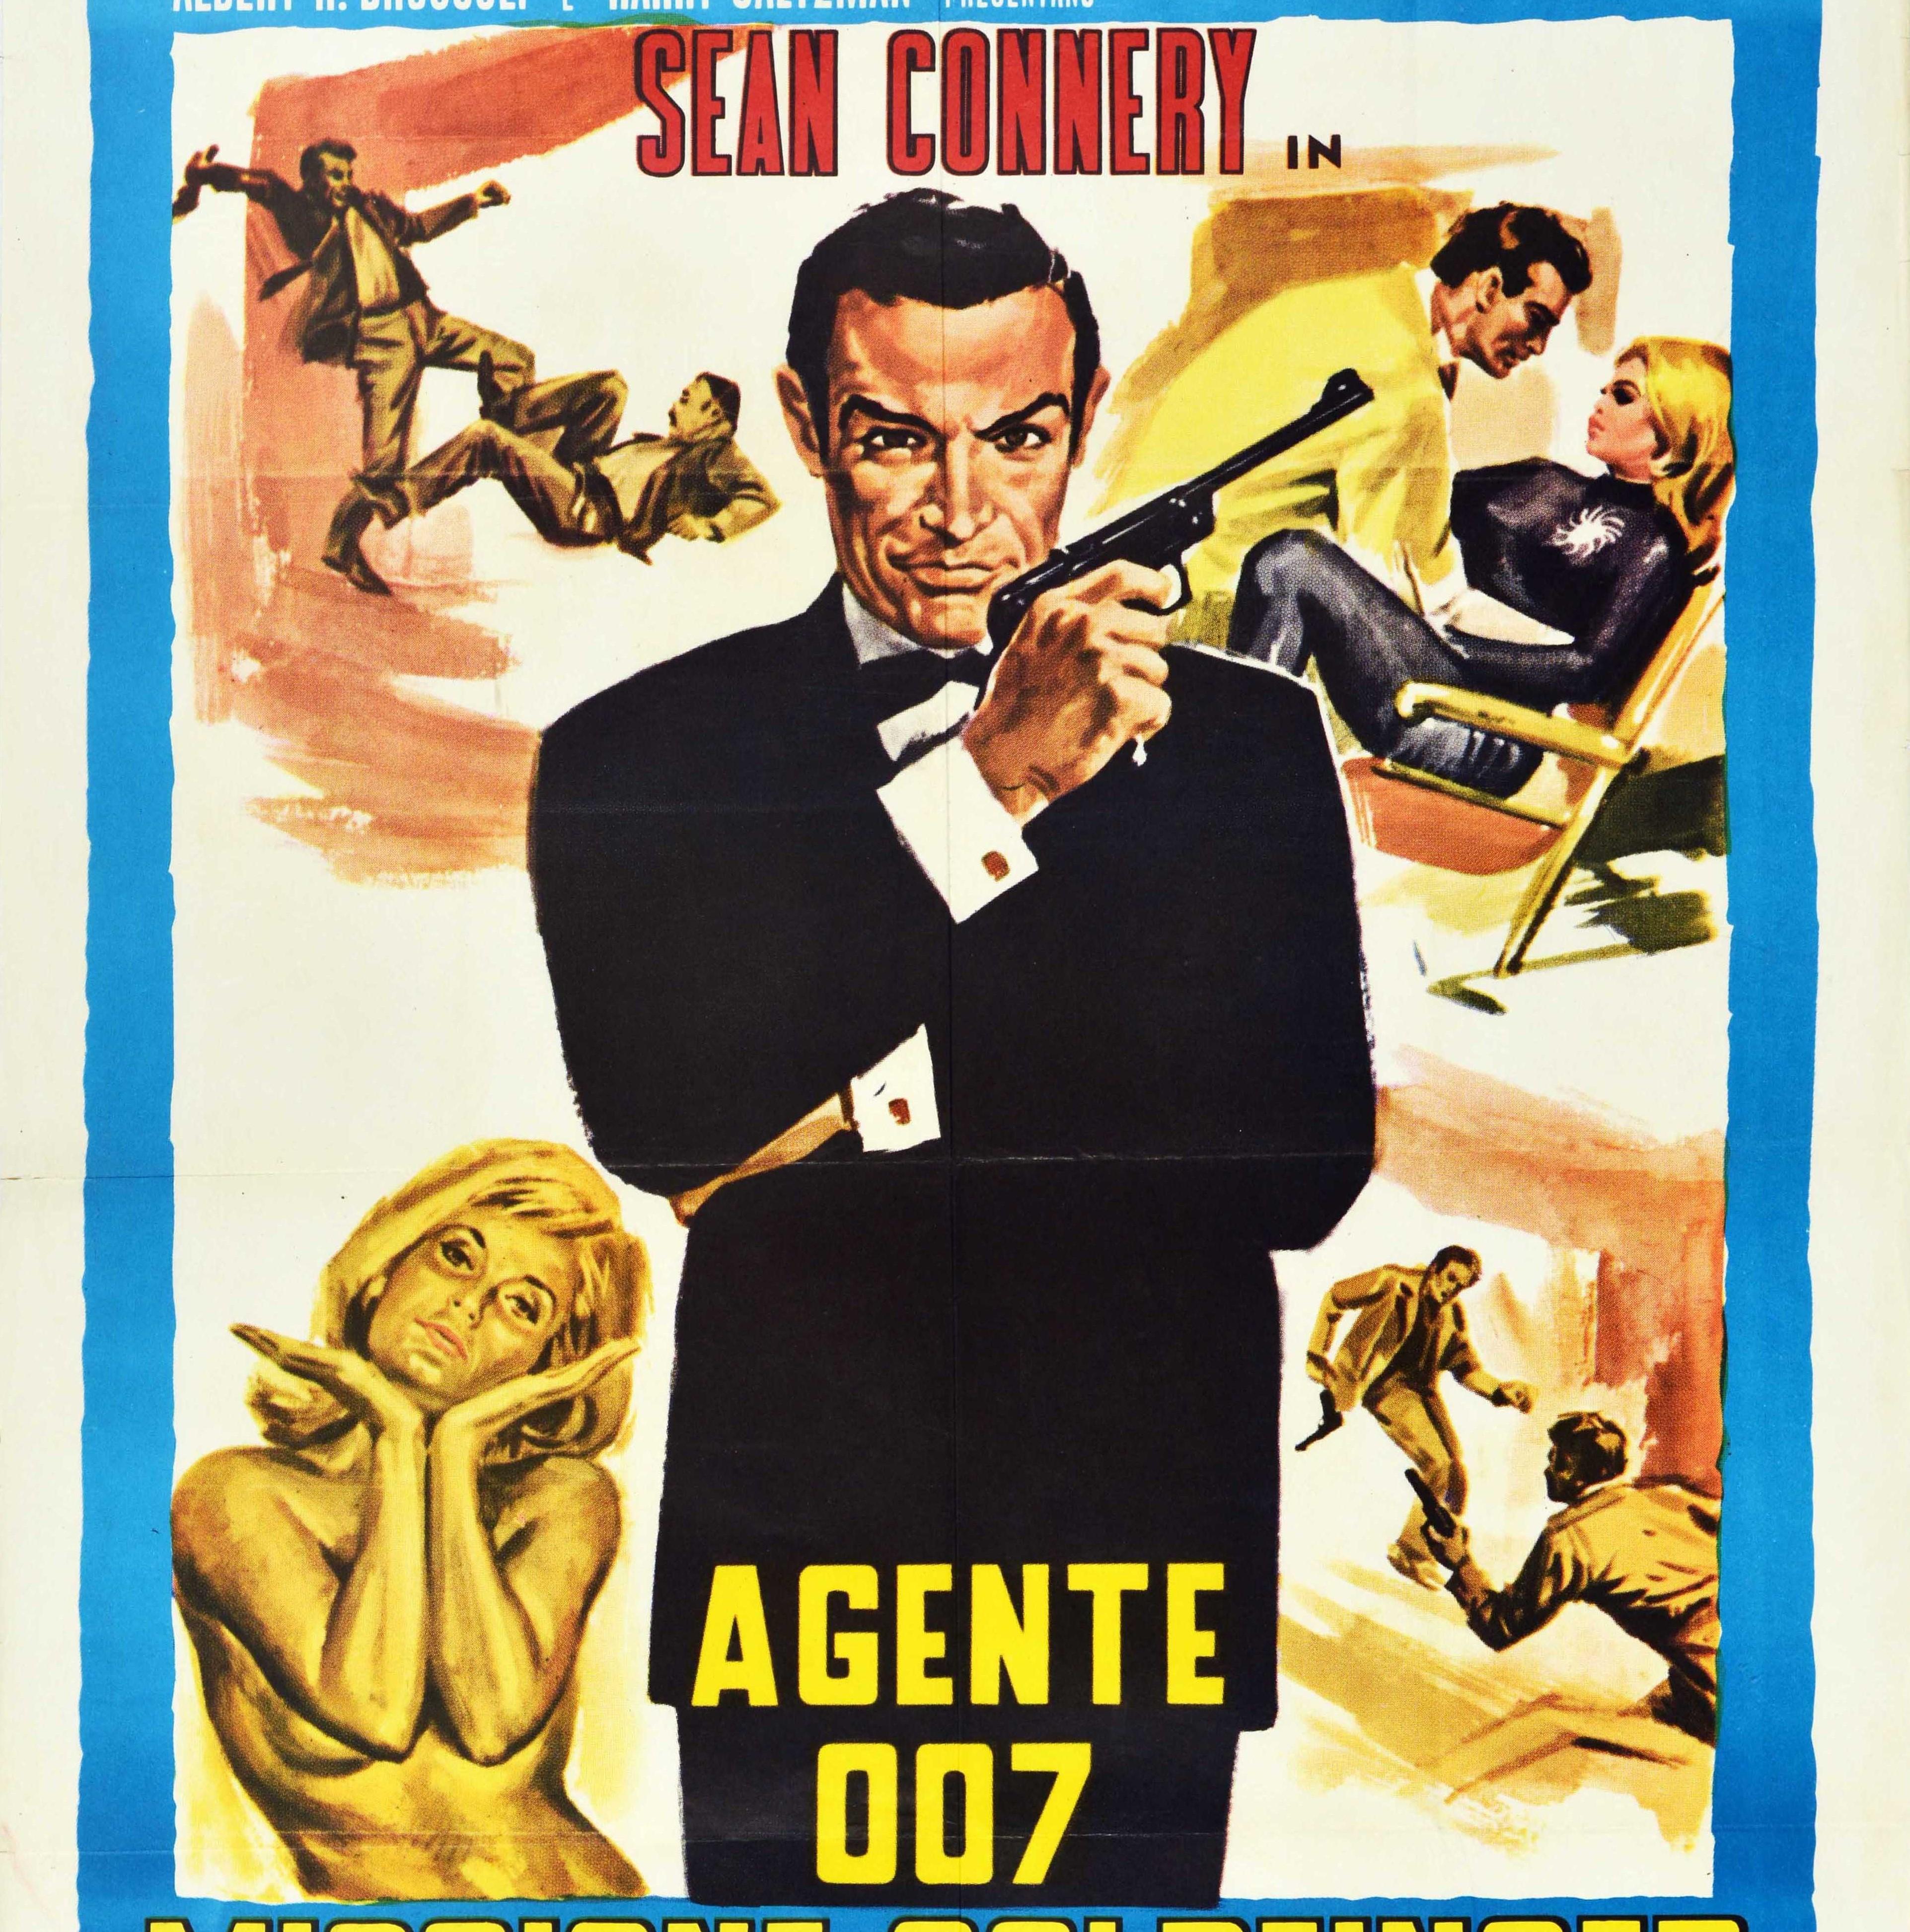 007 first movie